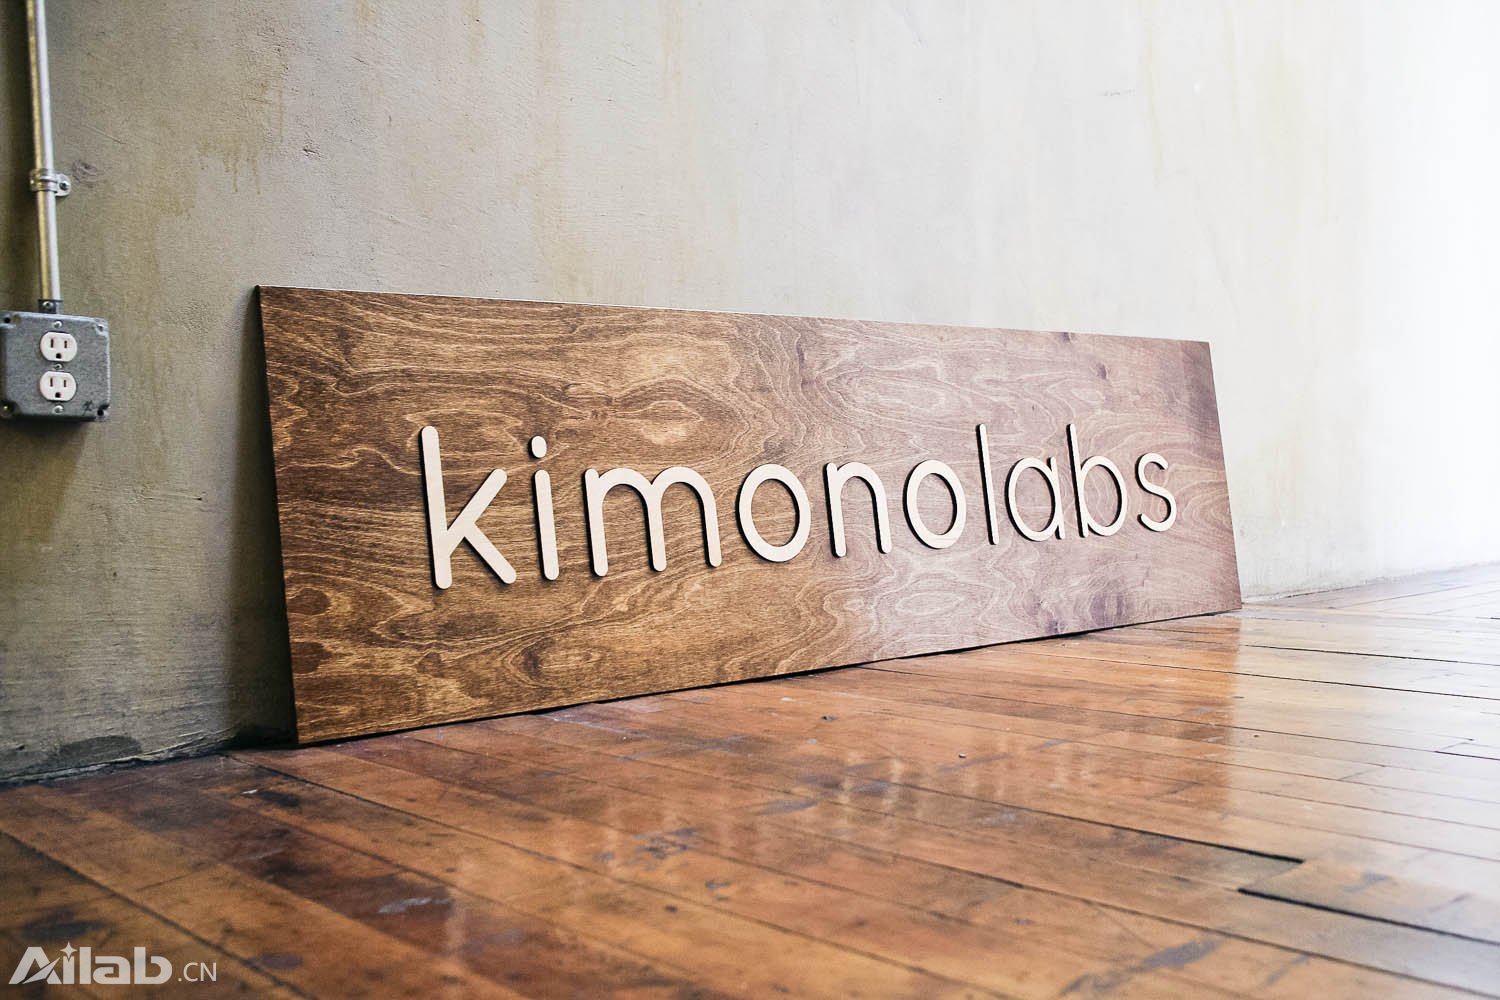 大数据公司 Palantir 收购 Kimono Labs